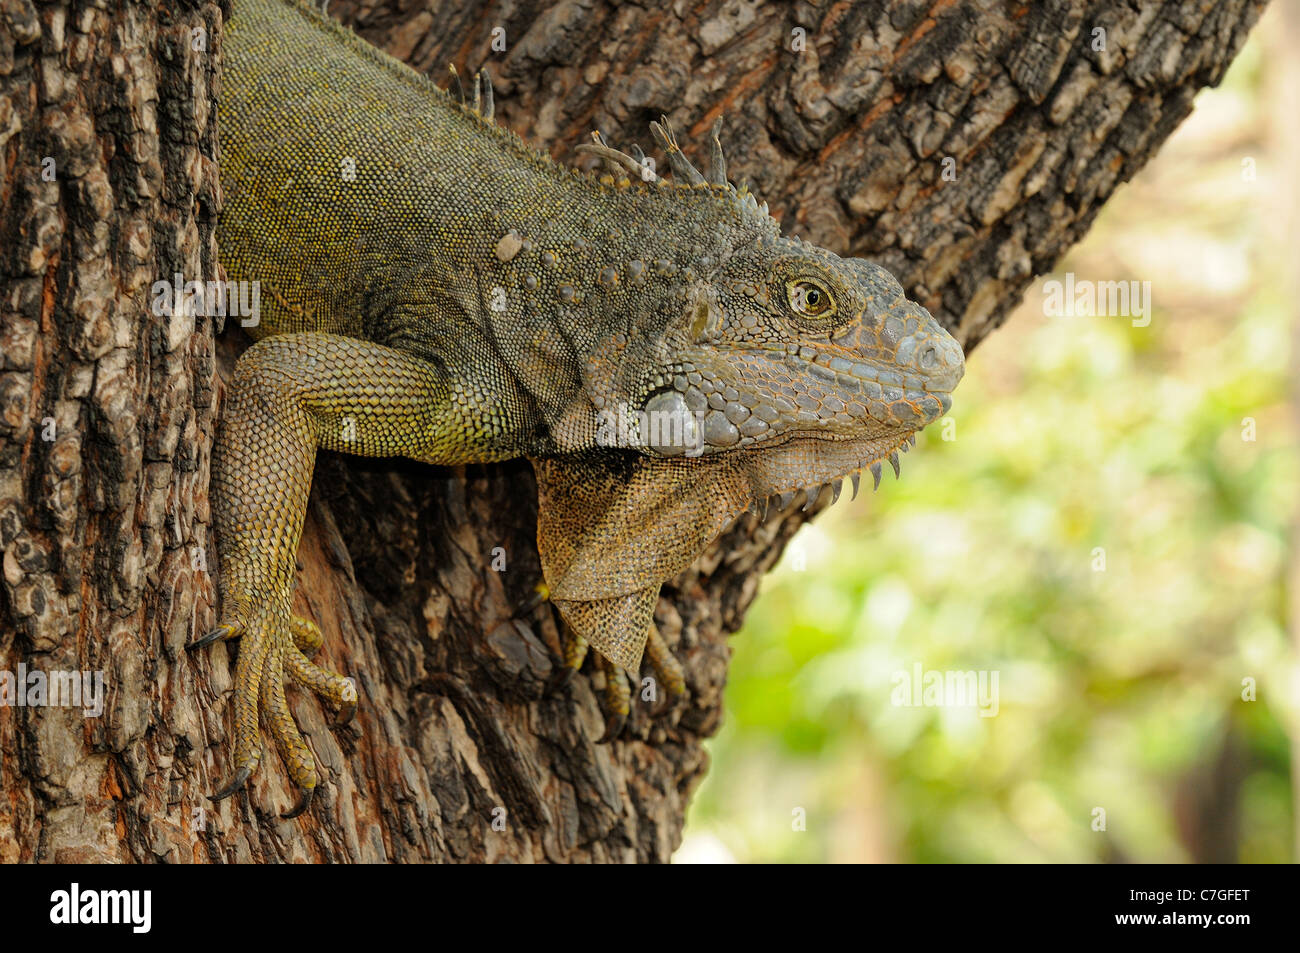 Iguana (Iguana iguana) climbing down tree, Parque Bolivar, Guayaquil, Ecuador Stock Photo